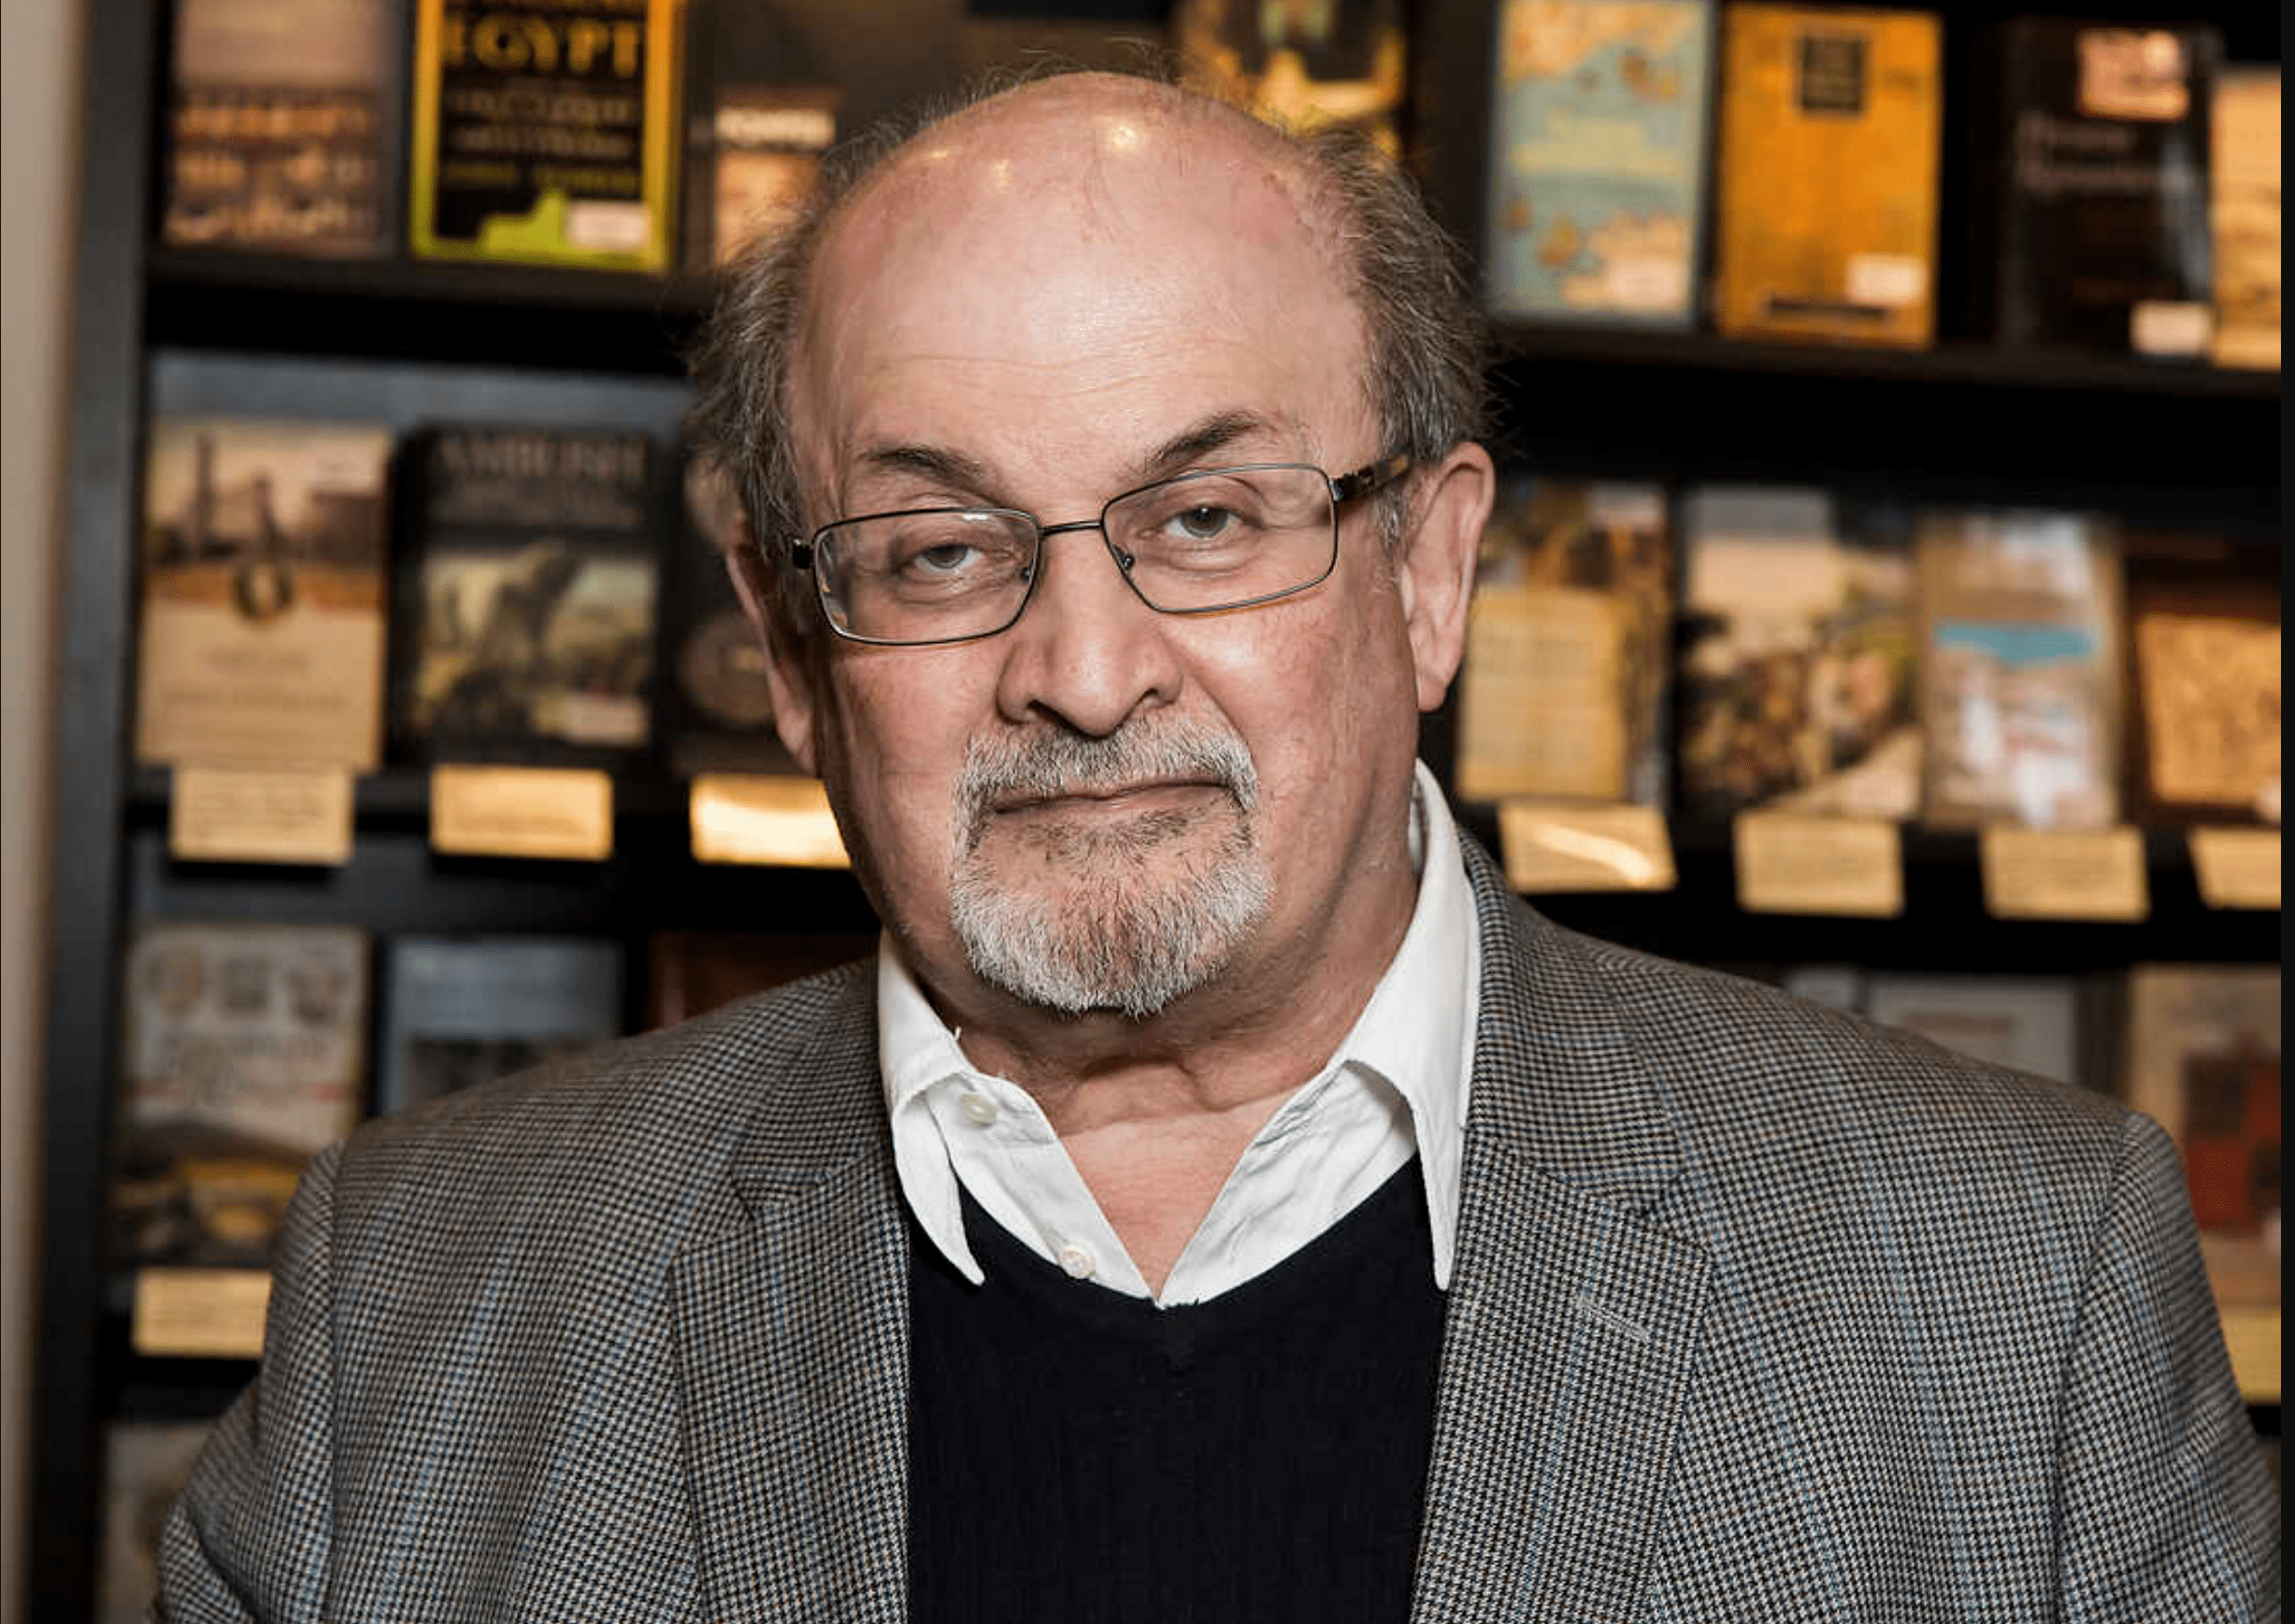 سلمان رشدی نویسنده کتاب آیات شیطانی پیش از شروع سخنرانی در نیویورک مورد حمله قرار گرفت